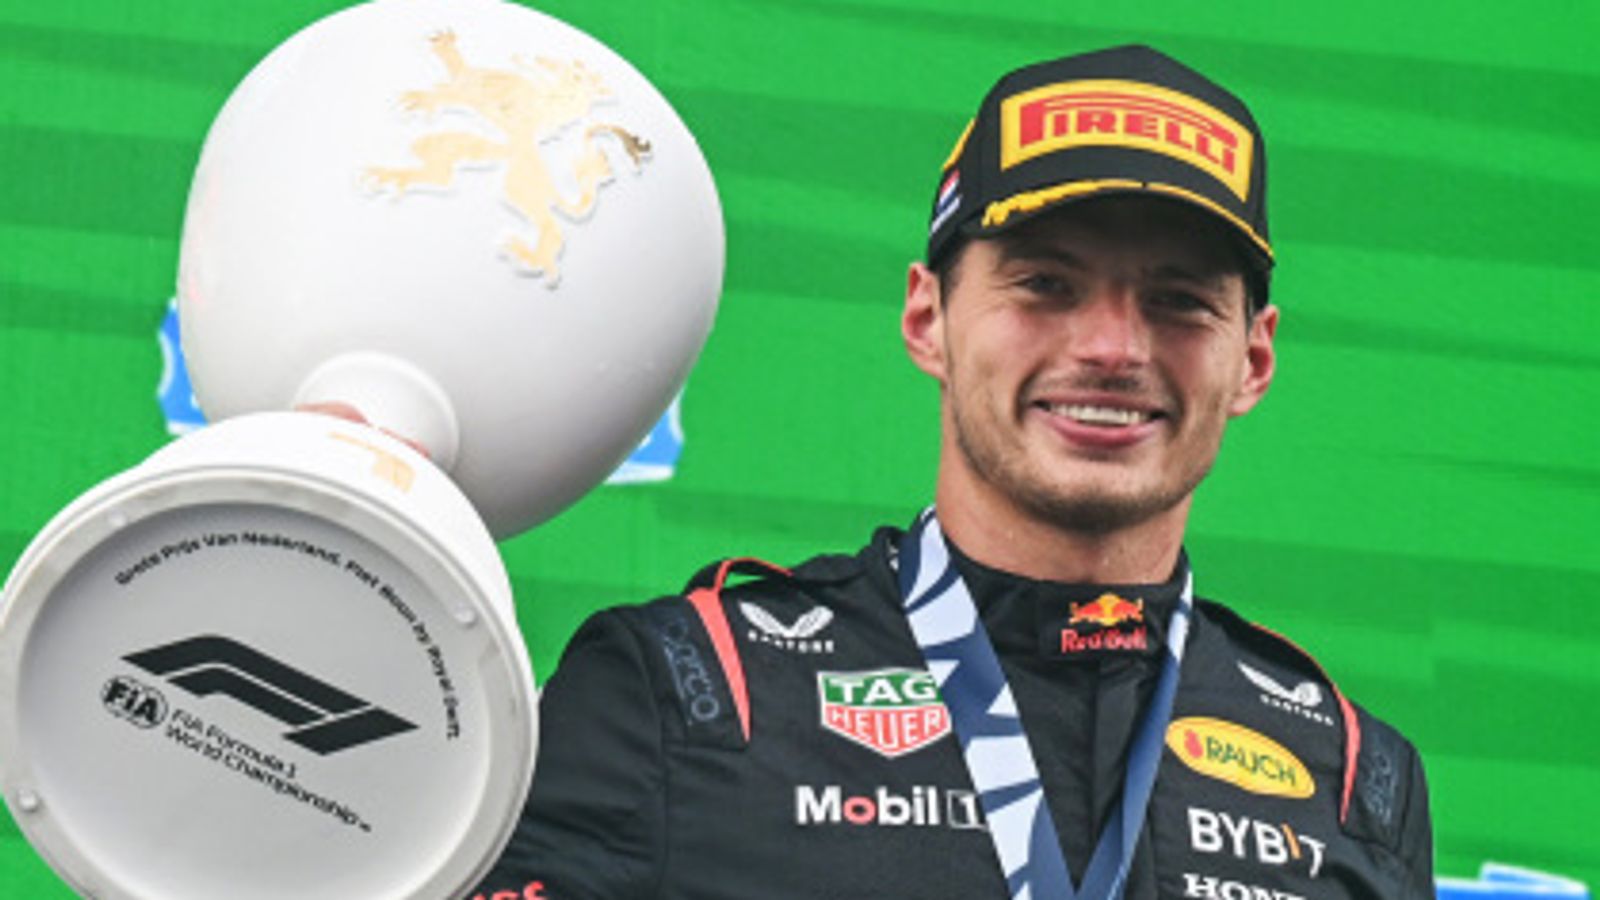 Nederlandse Grand Prix: Max Verstappen wint race in de regen en evenaart Sebastian Vettel's record van negen overwinningen op rij |  Formule 1 nieuws